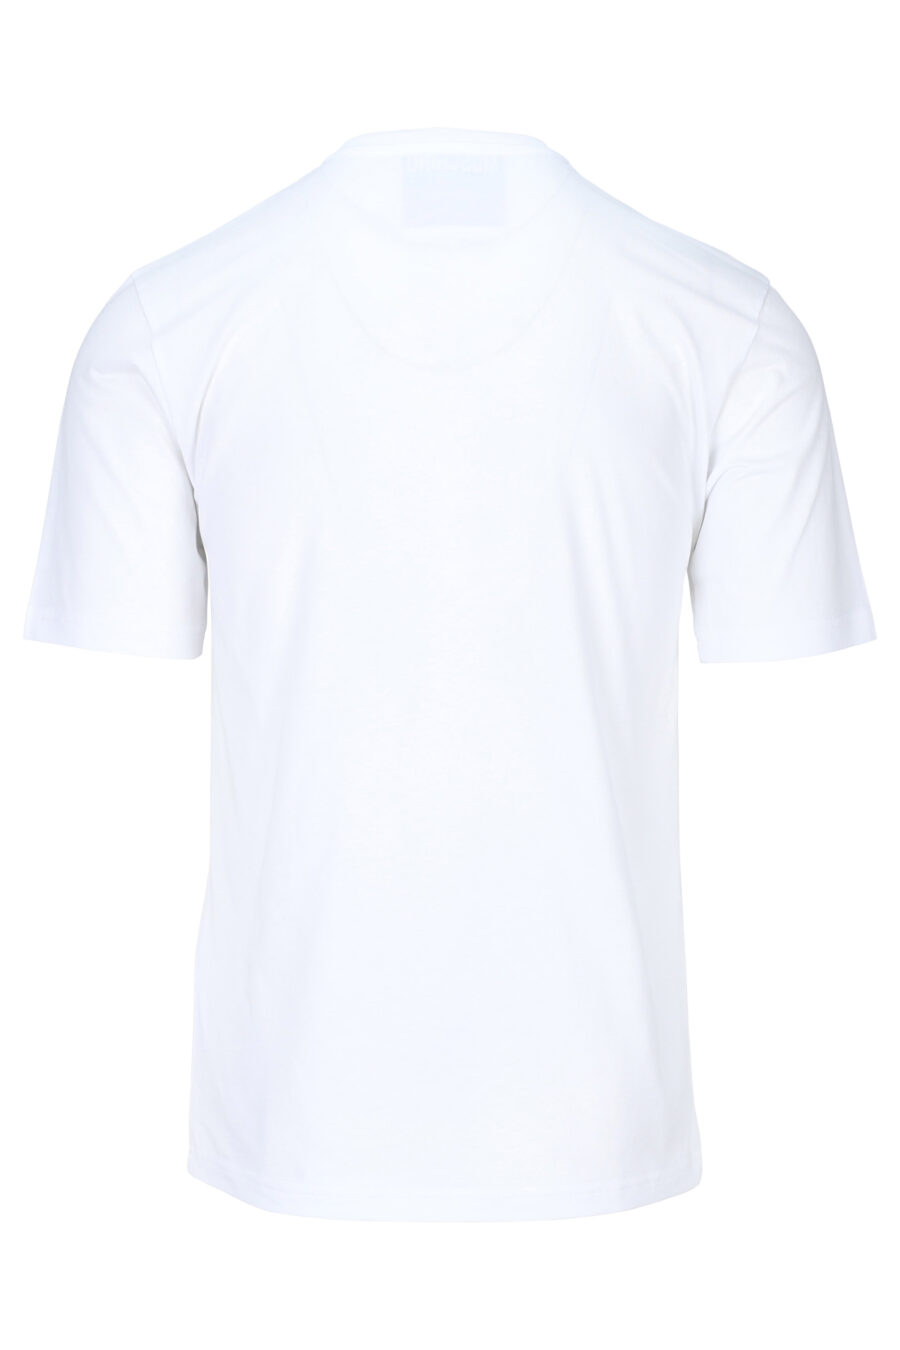 Weißes T-Shirt mit schwarzem getragenen Maxilogo - 889316937954 1